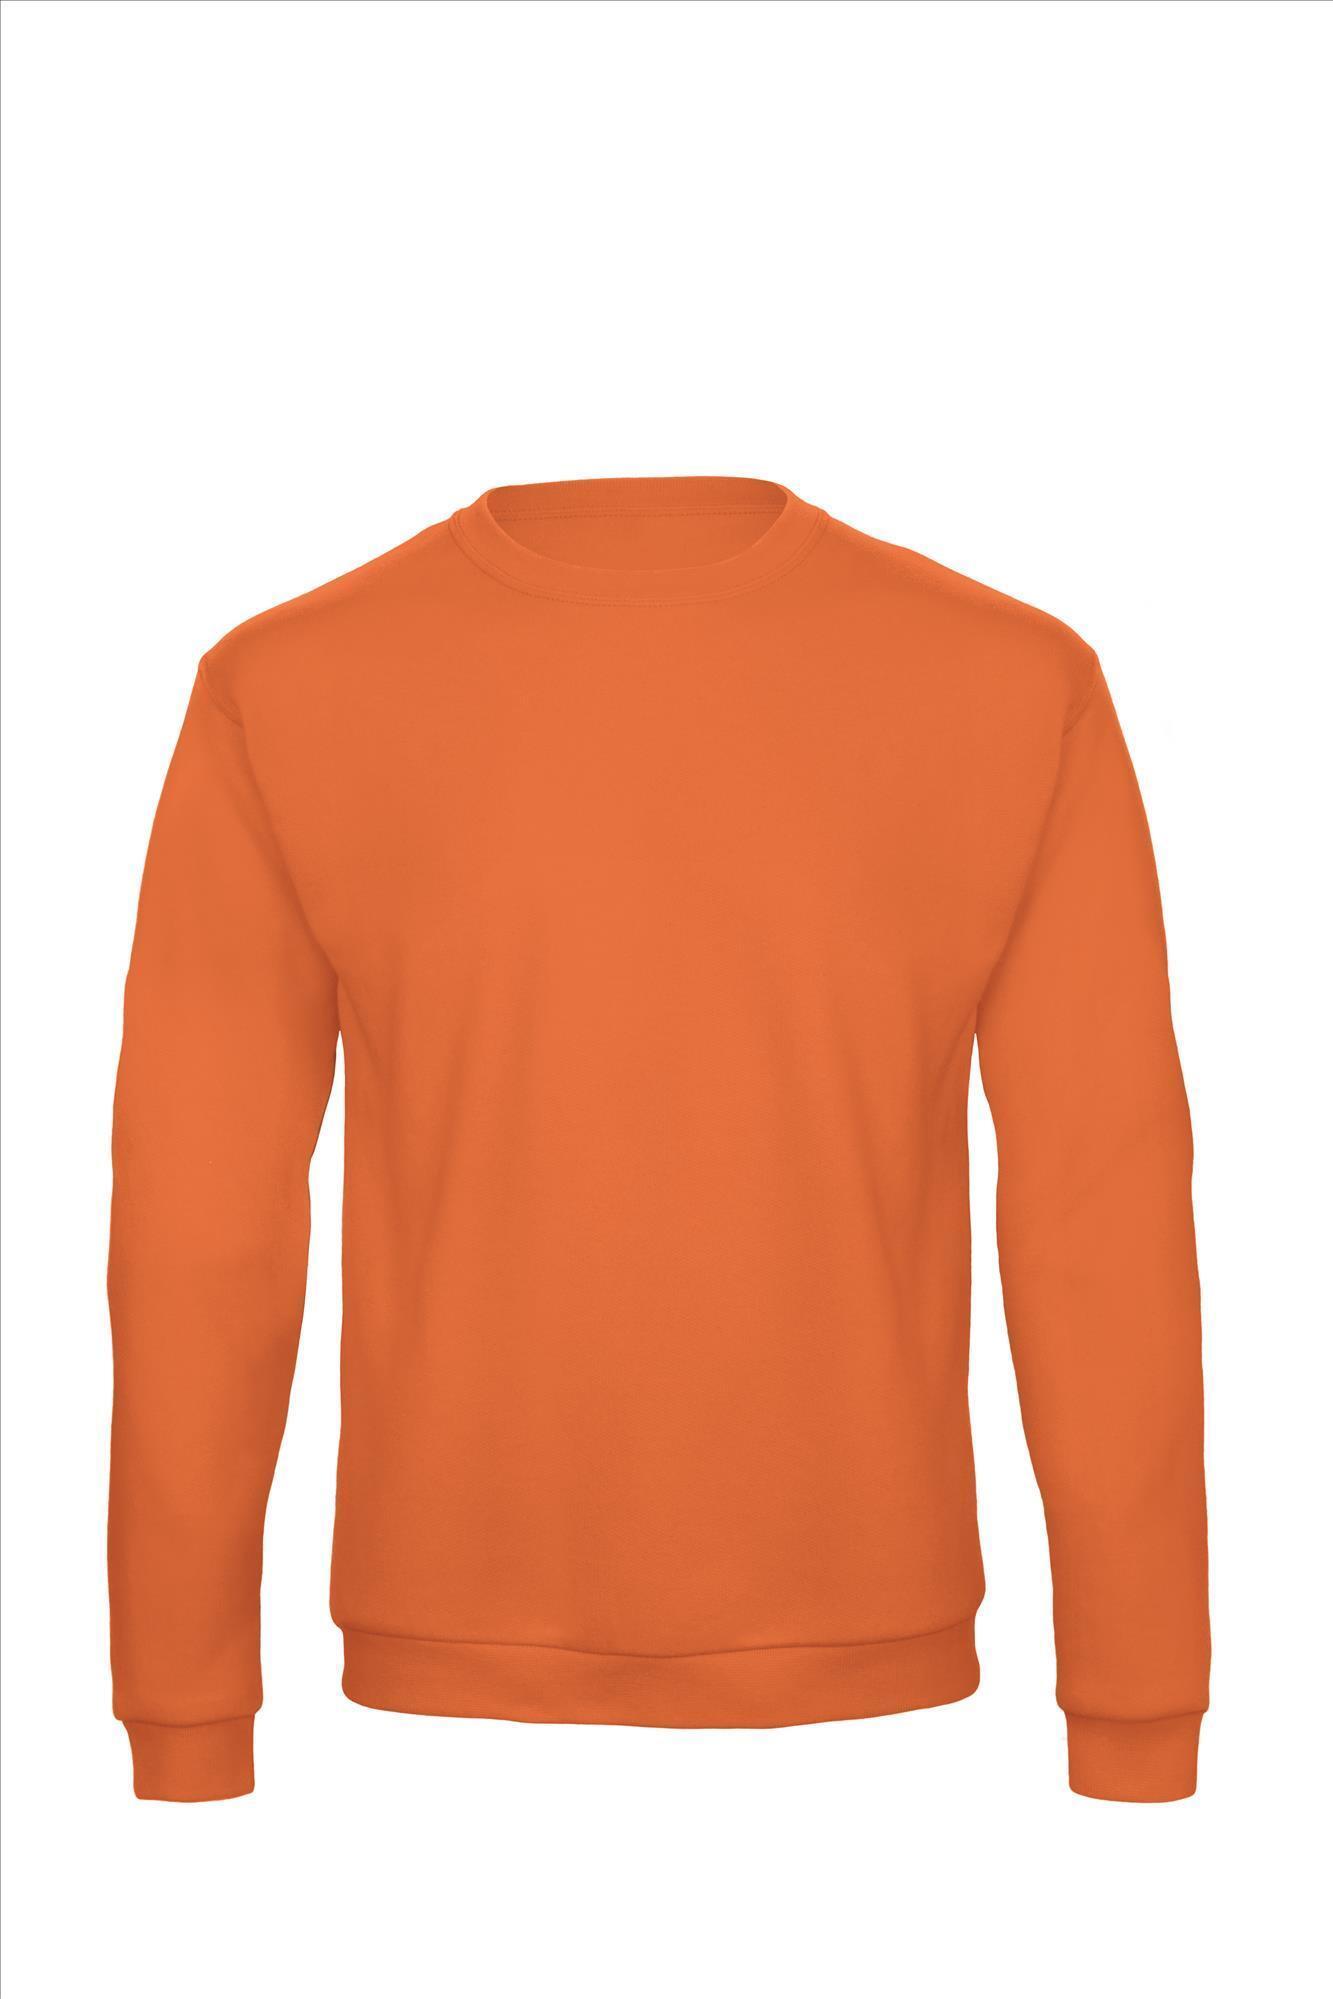 Sweater voor mannen budget oranje